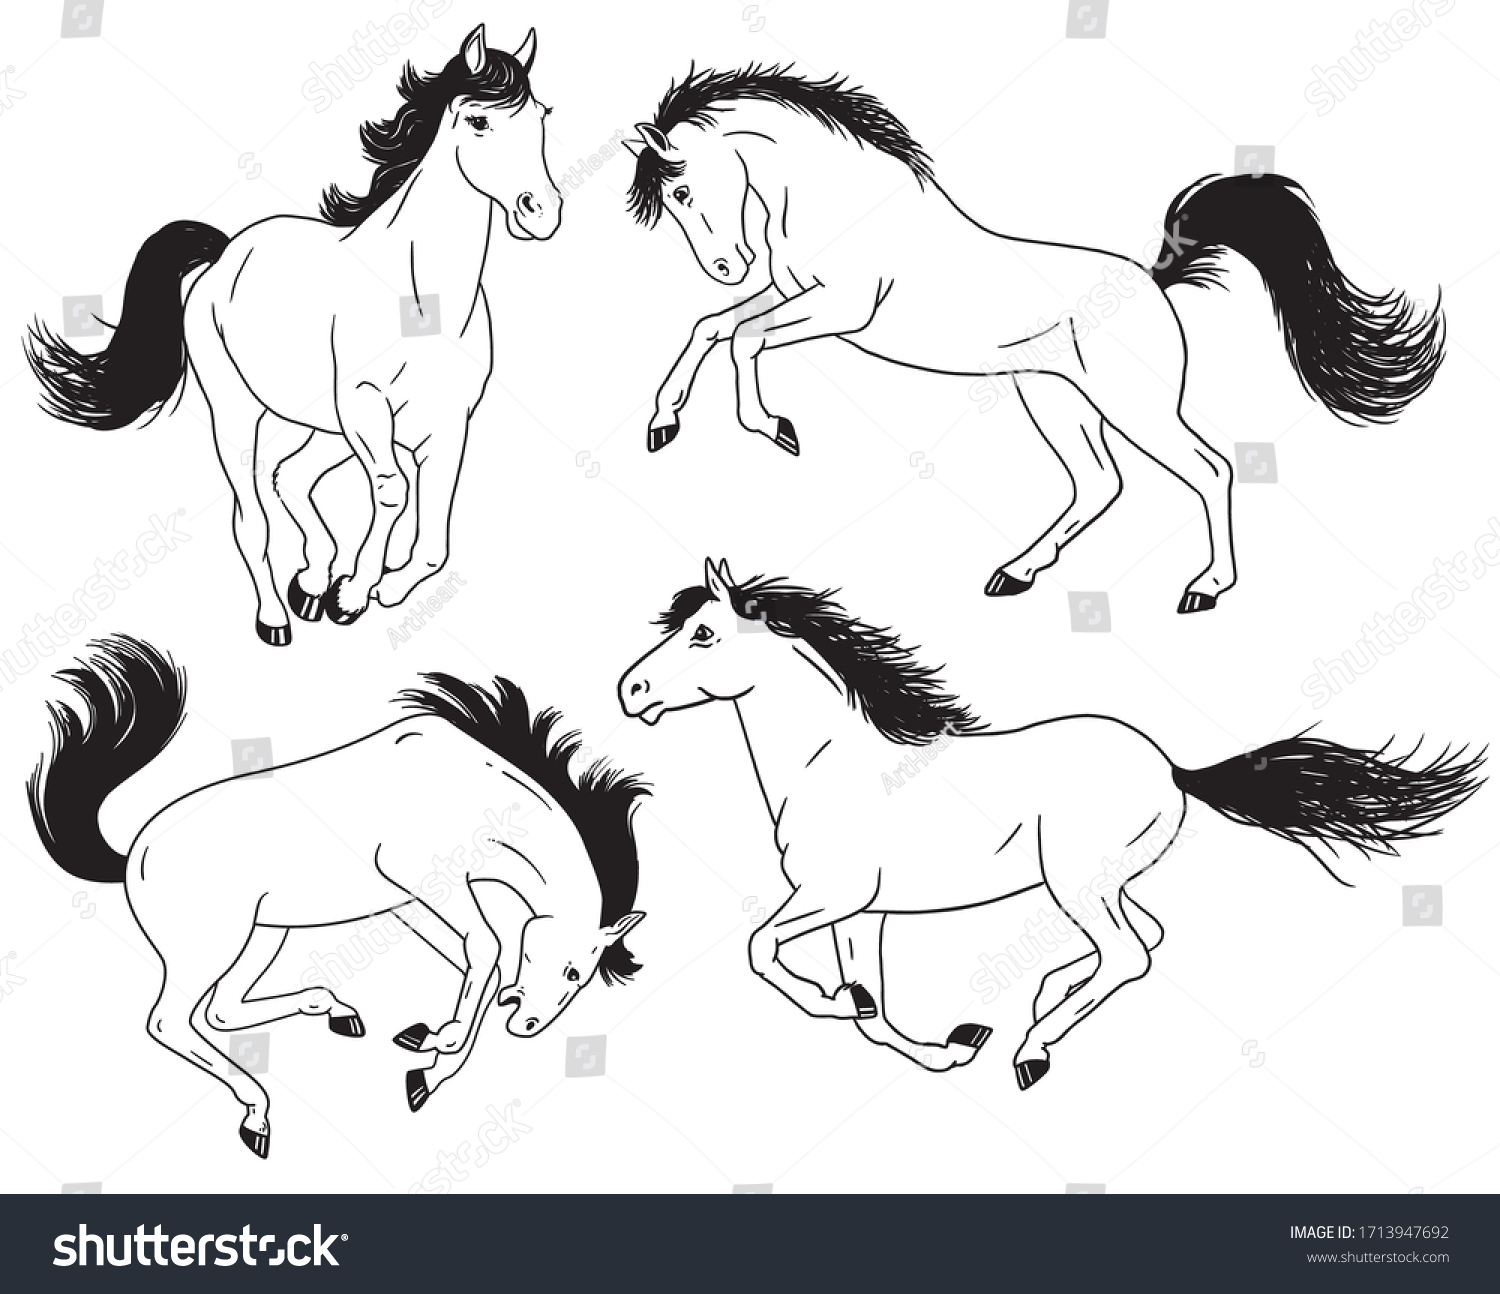 走る馬 飛ぶ馬 跳ぶ馬 飼育する馬の白黒の絵 ベクター画像の輪郭のイラスト のベクター画像素材 ロイヤリティフリー